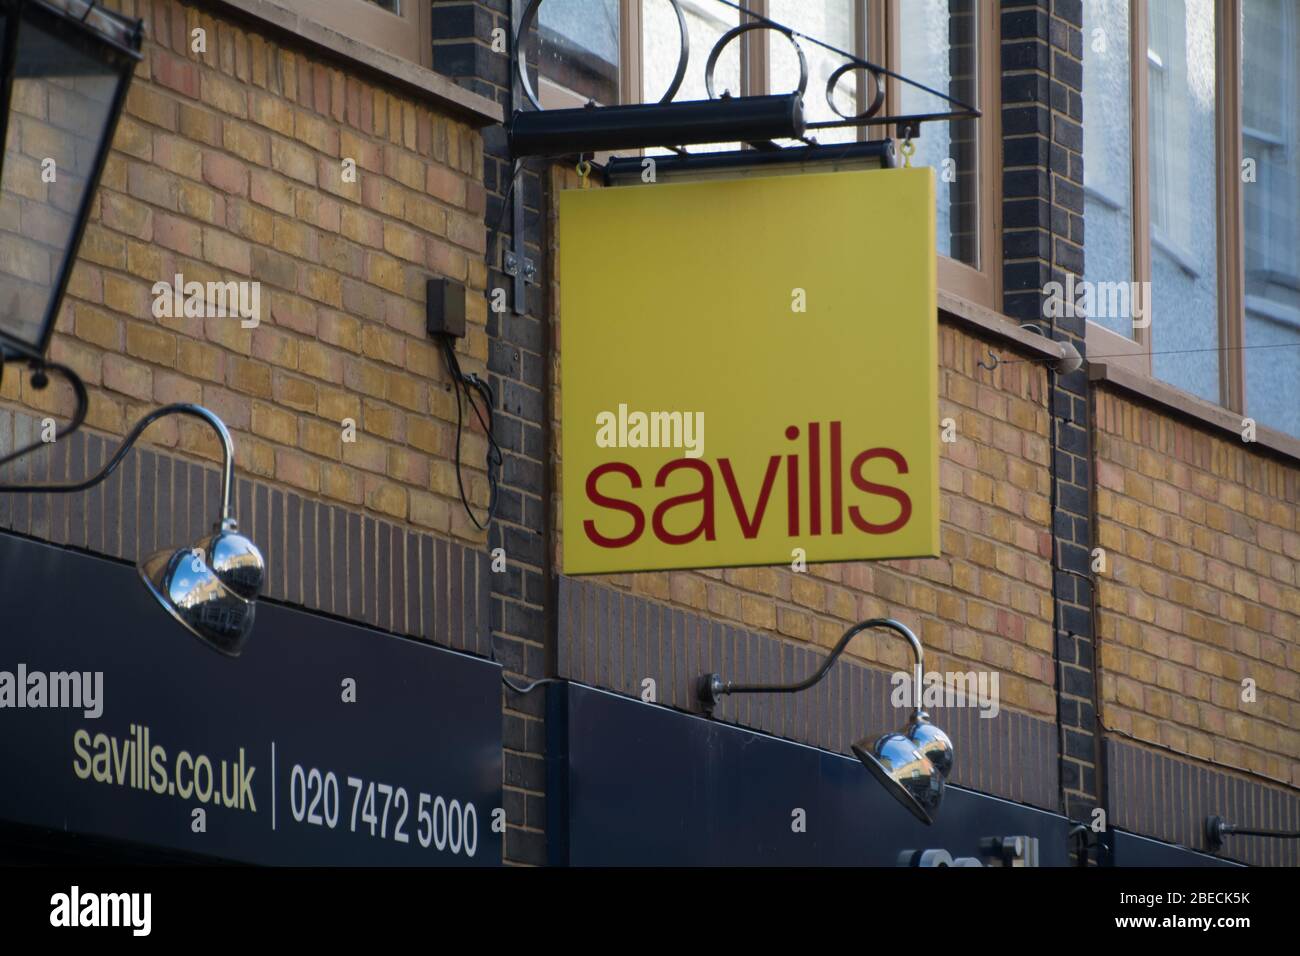 London- Savills estate agent exterior sign Stock Photo